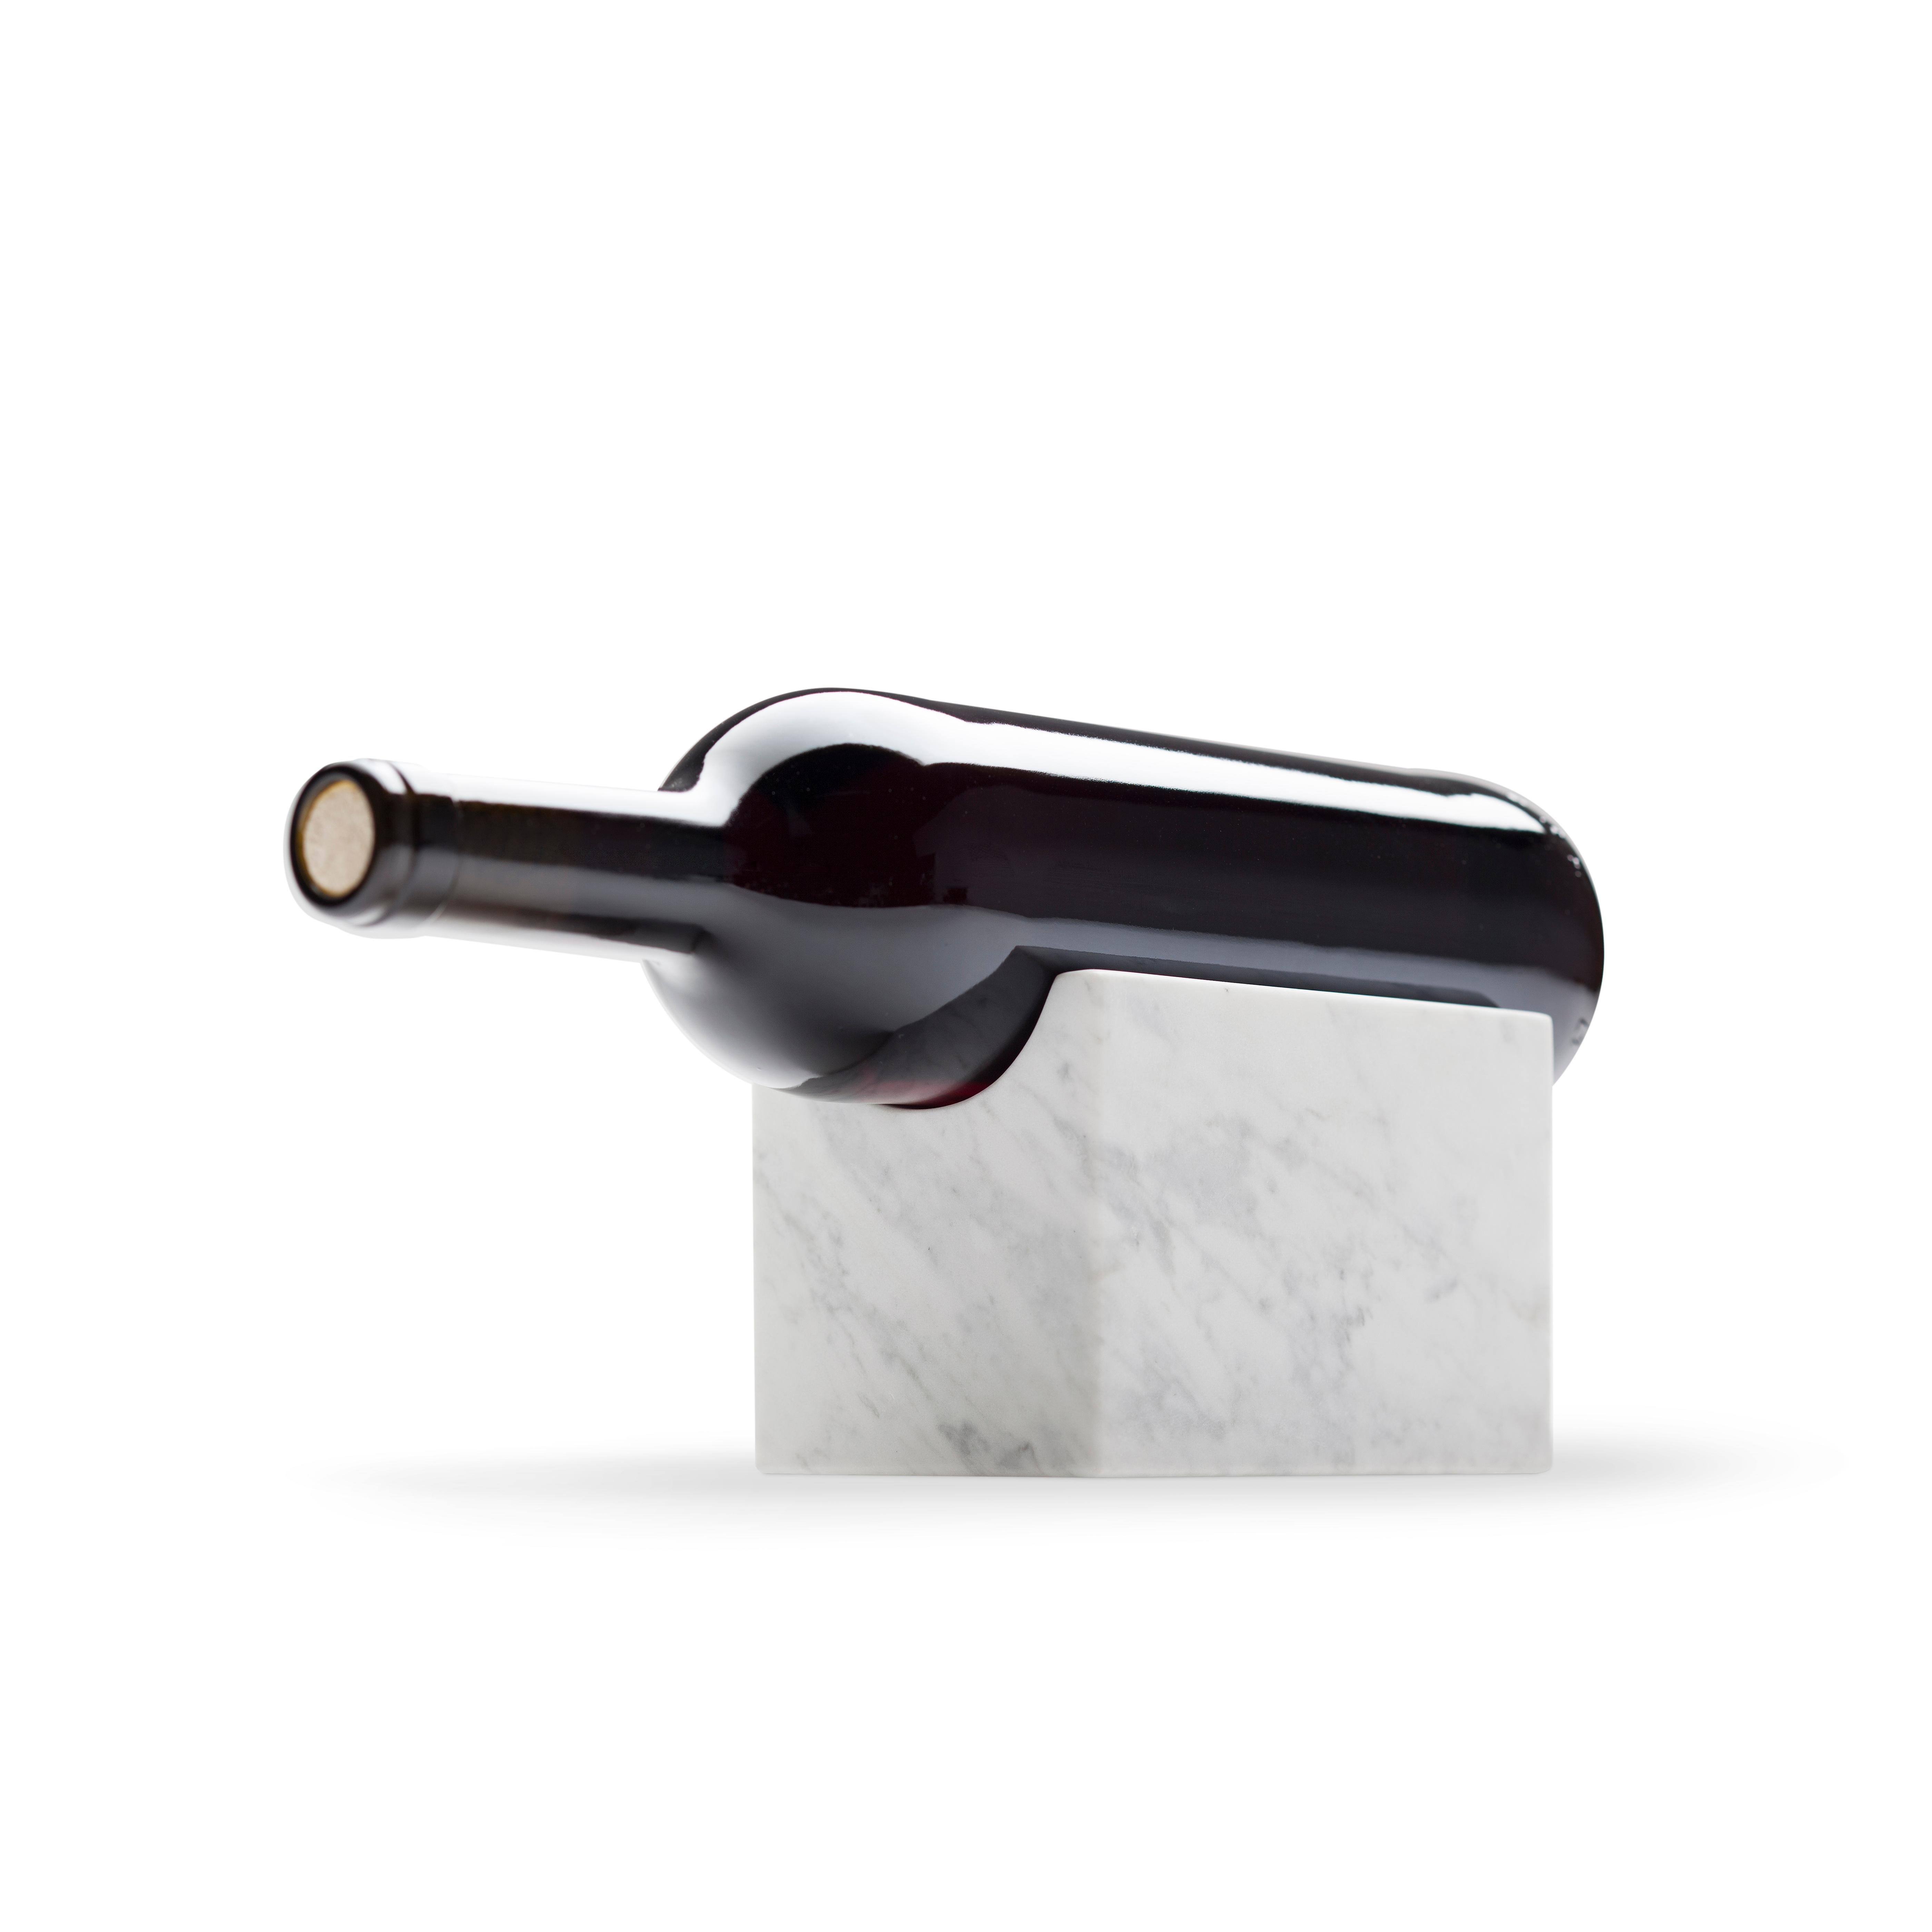 Notre porte-bouteille Marblelous est une pièce robuste, minimaliste et intemporelle. Une manière élégante de présenter un vin spécial. En outre, le morceau de marbre de Carrare peut transférer le froid à la bouteille, contribuant ainsi à maintenir